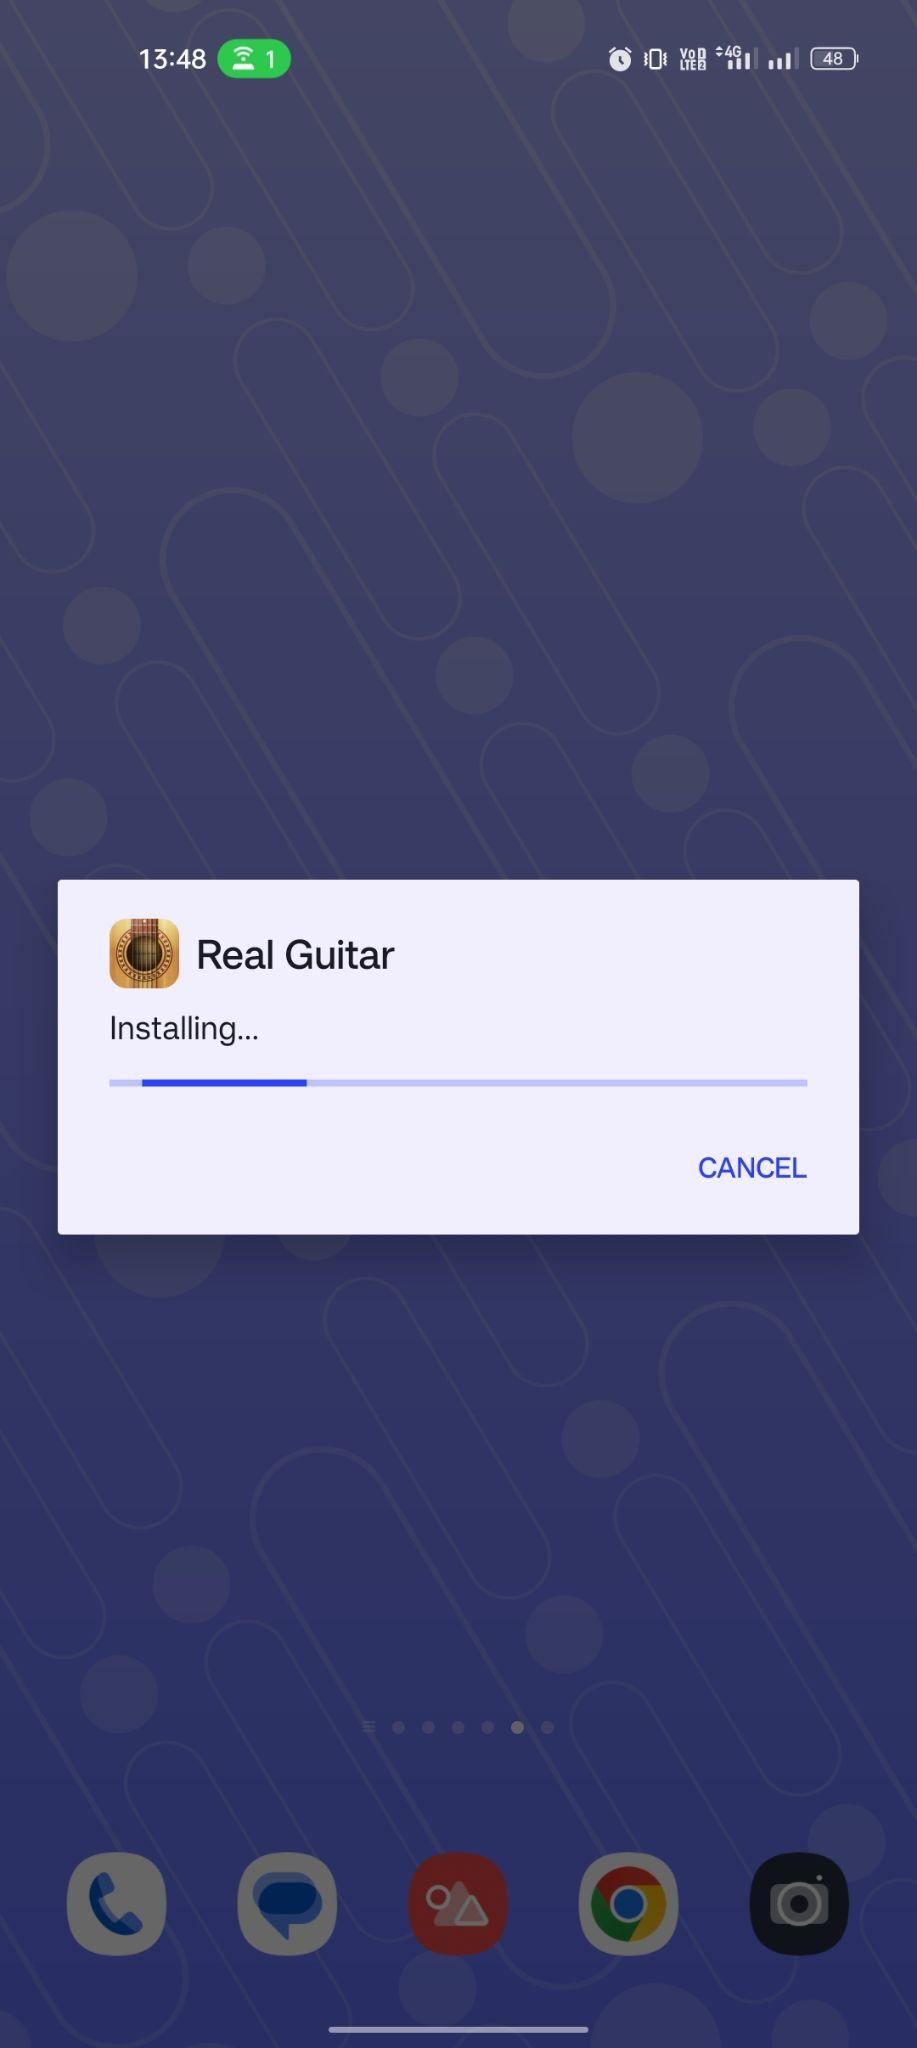 Real Guitar apk installing